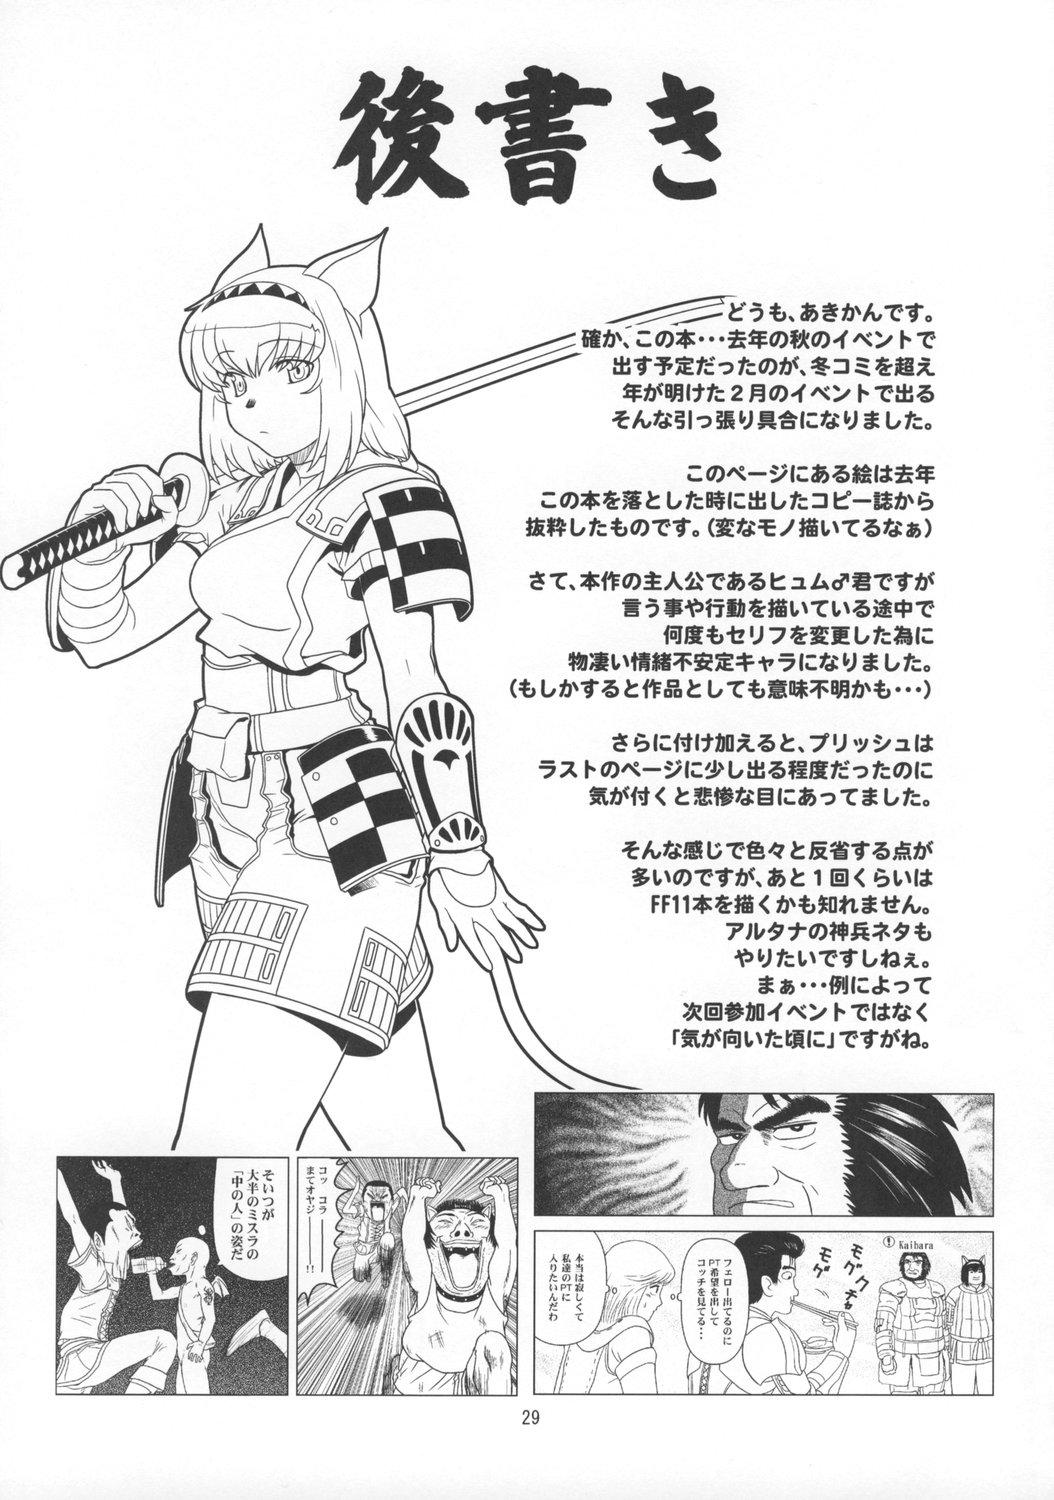 Verga Anoko wa F4 - Final fantasy xi Cbt - Page 28